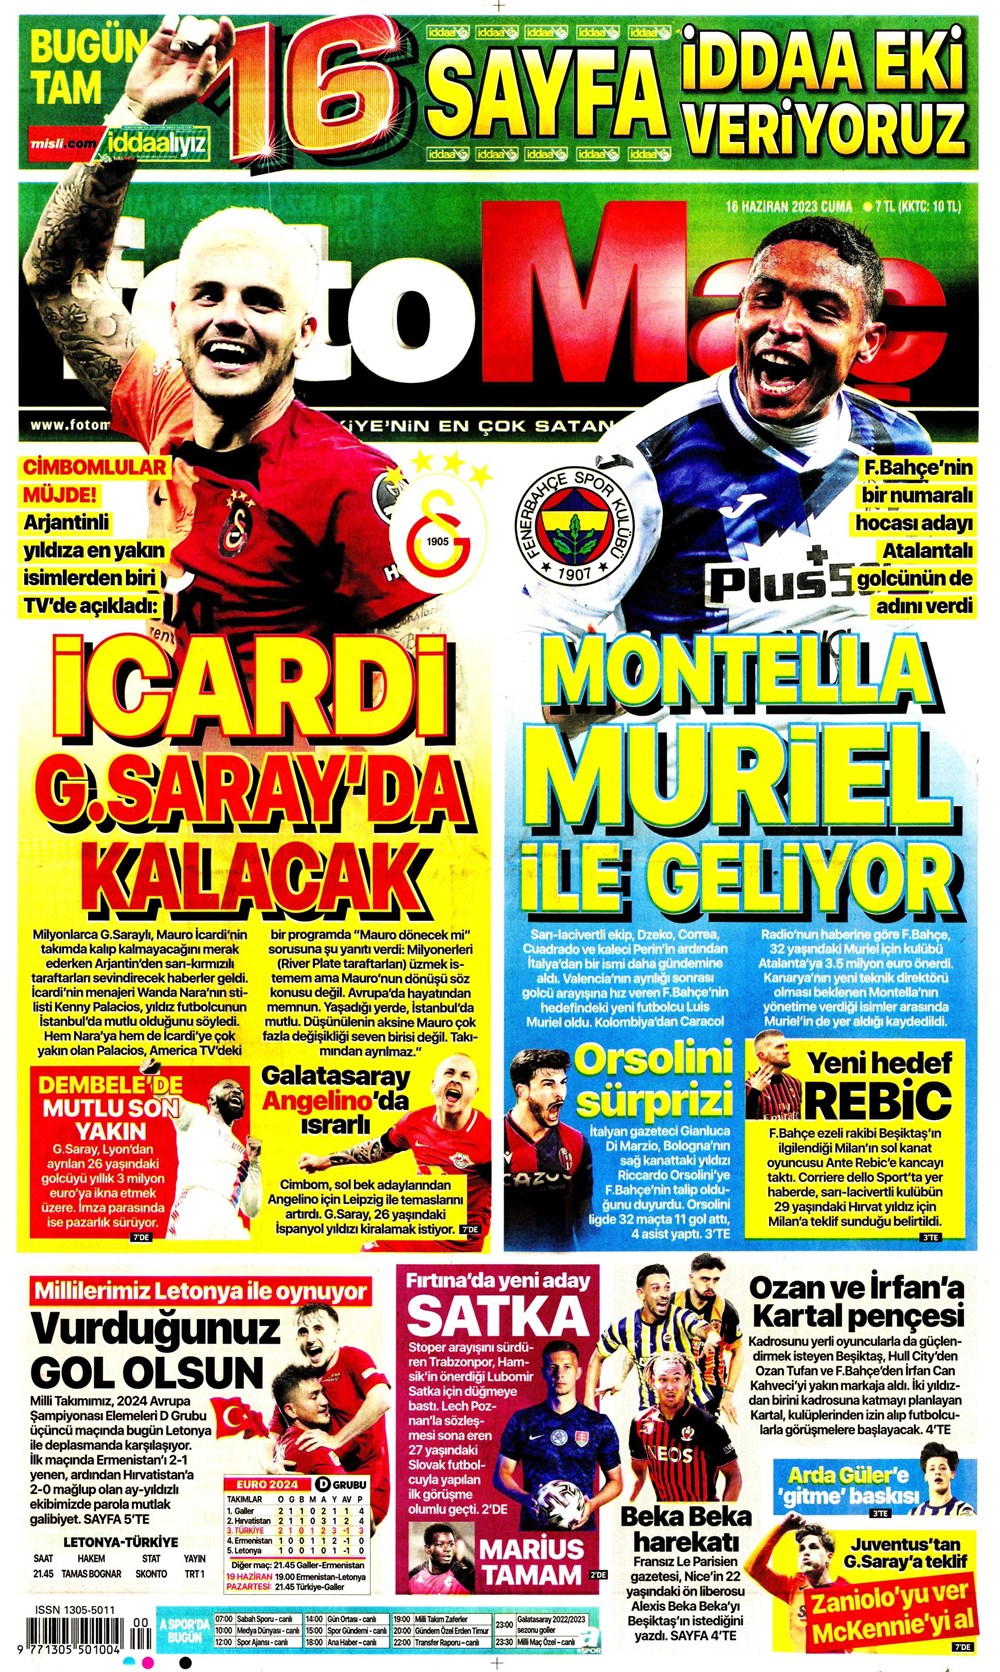 "Dzeko çok yakın" Sporun manşetleri (16 Haziran 2023)  - 8. Foto